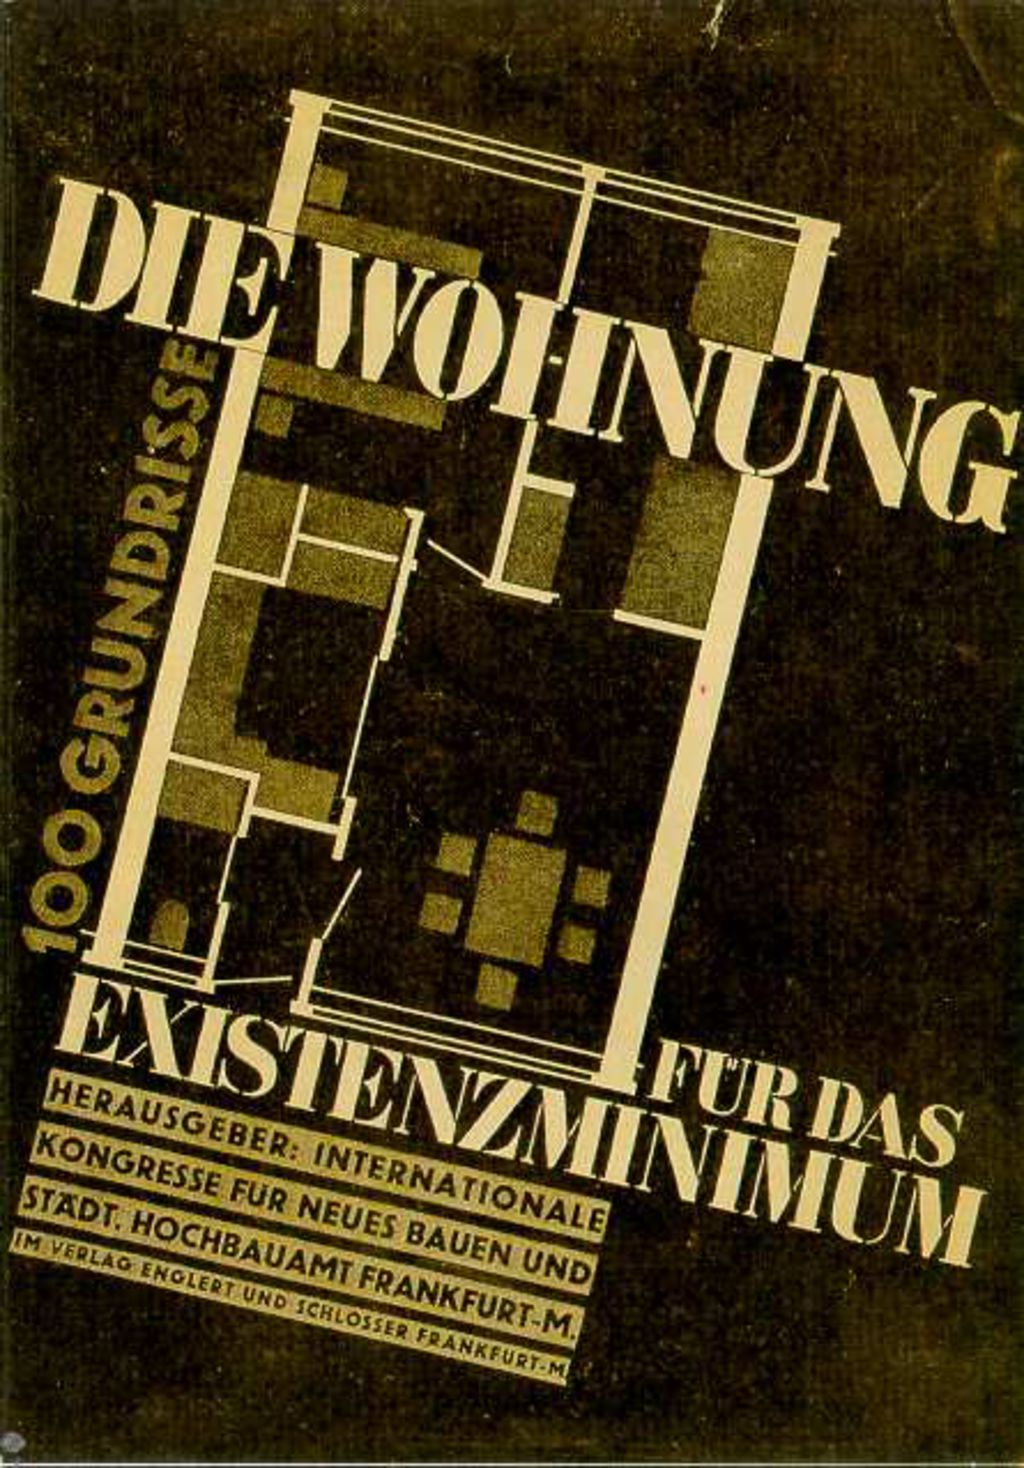 Exponat: Broschüre: "Die Wohnung für das Existenzminimum", 1930